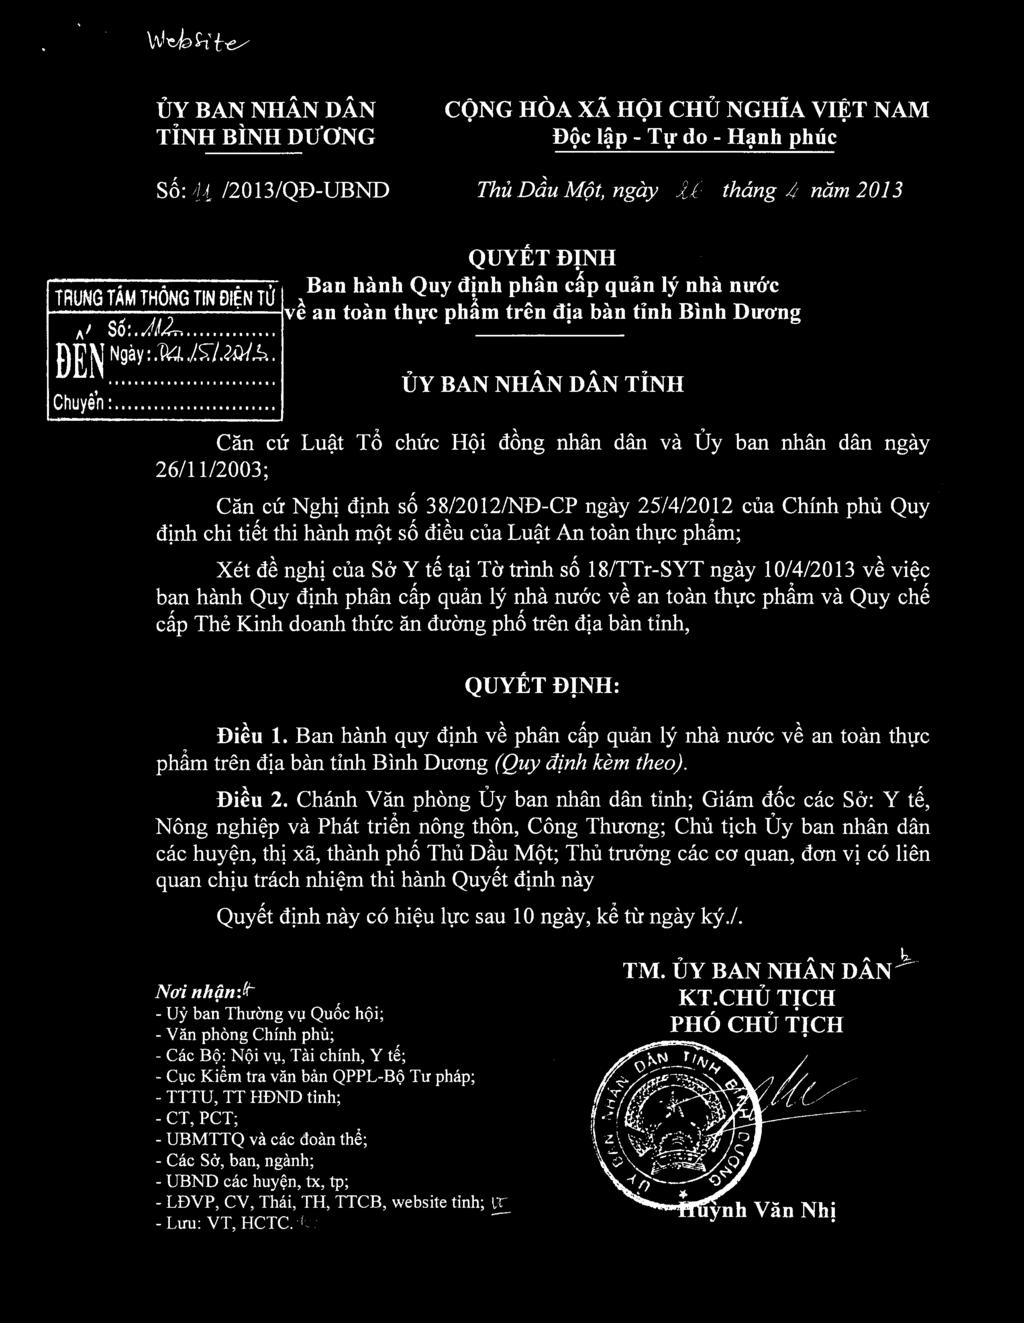 't To chirc Hei deng nhan dan va Uy ban nhan dan ngay 26/11/2003; Can cir Nghi dinh se 38/2012/ND-CP ngay 25/4/2012 cua Chinh phu Quy dinh chi tiet thi hanh met so dil cua Lu'a.